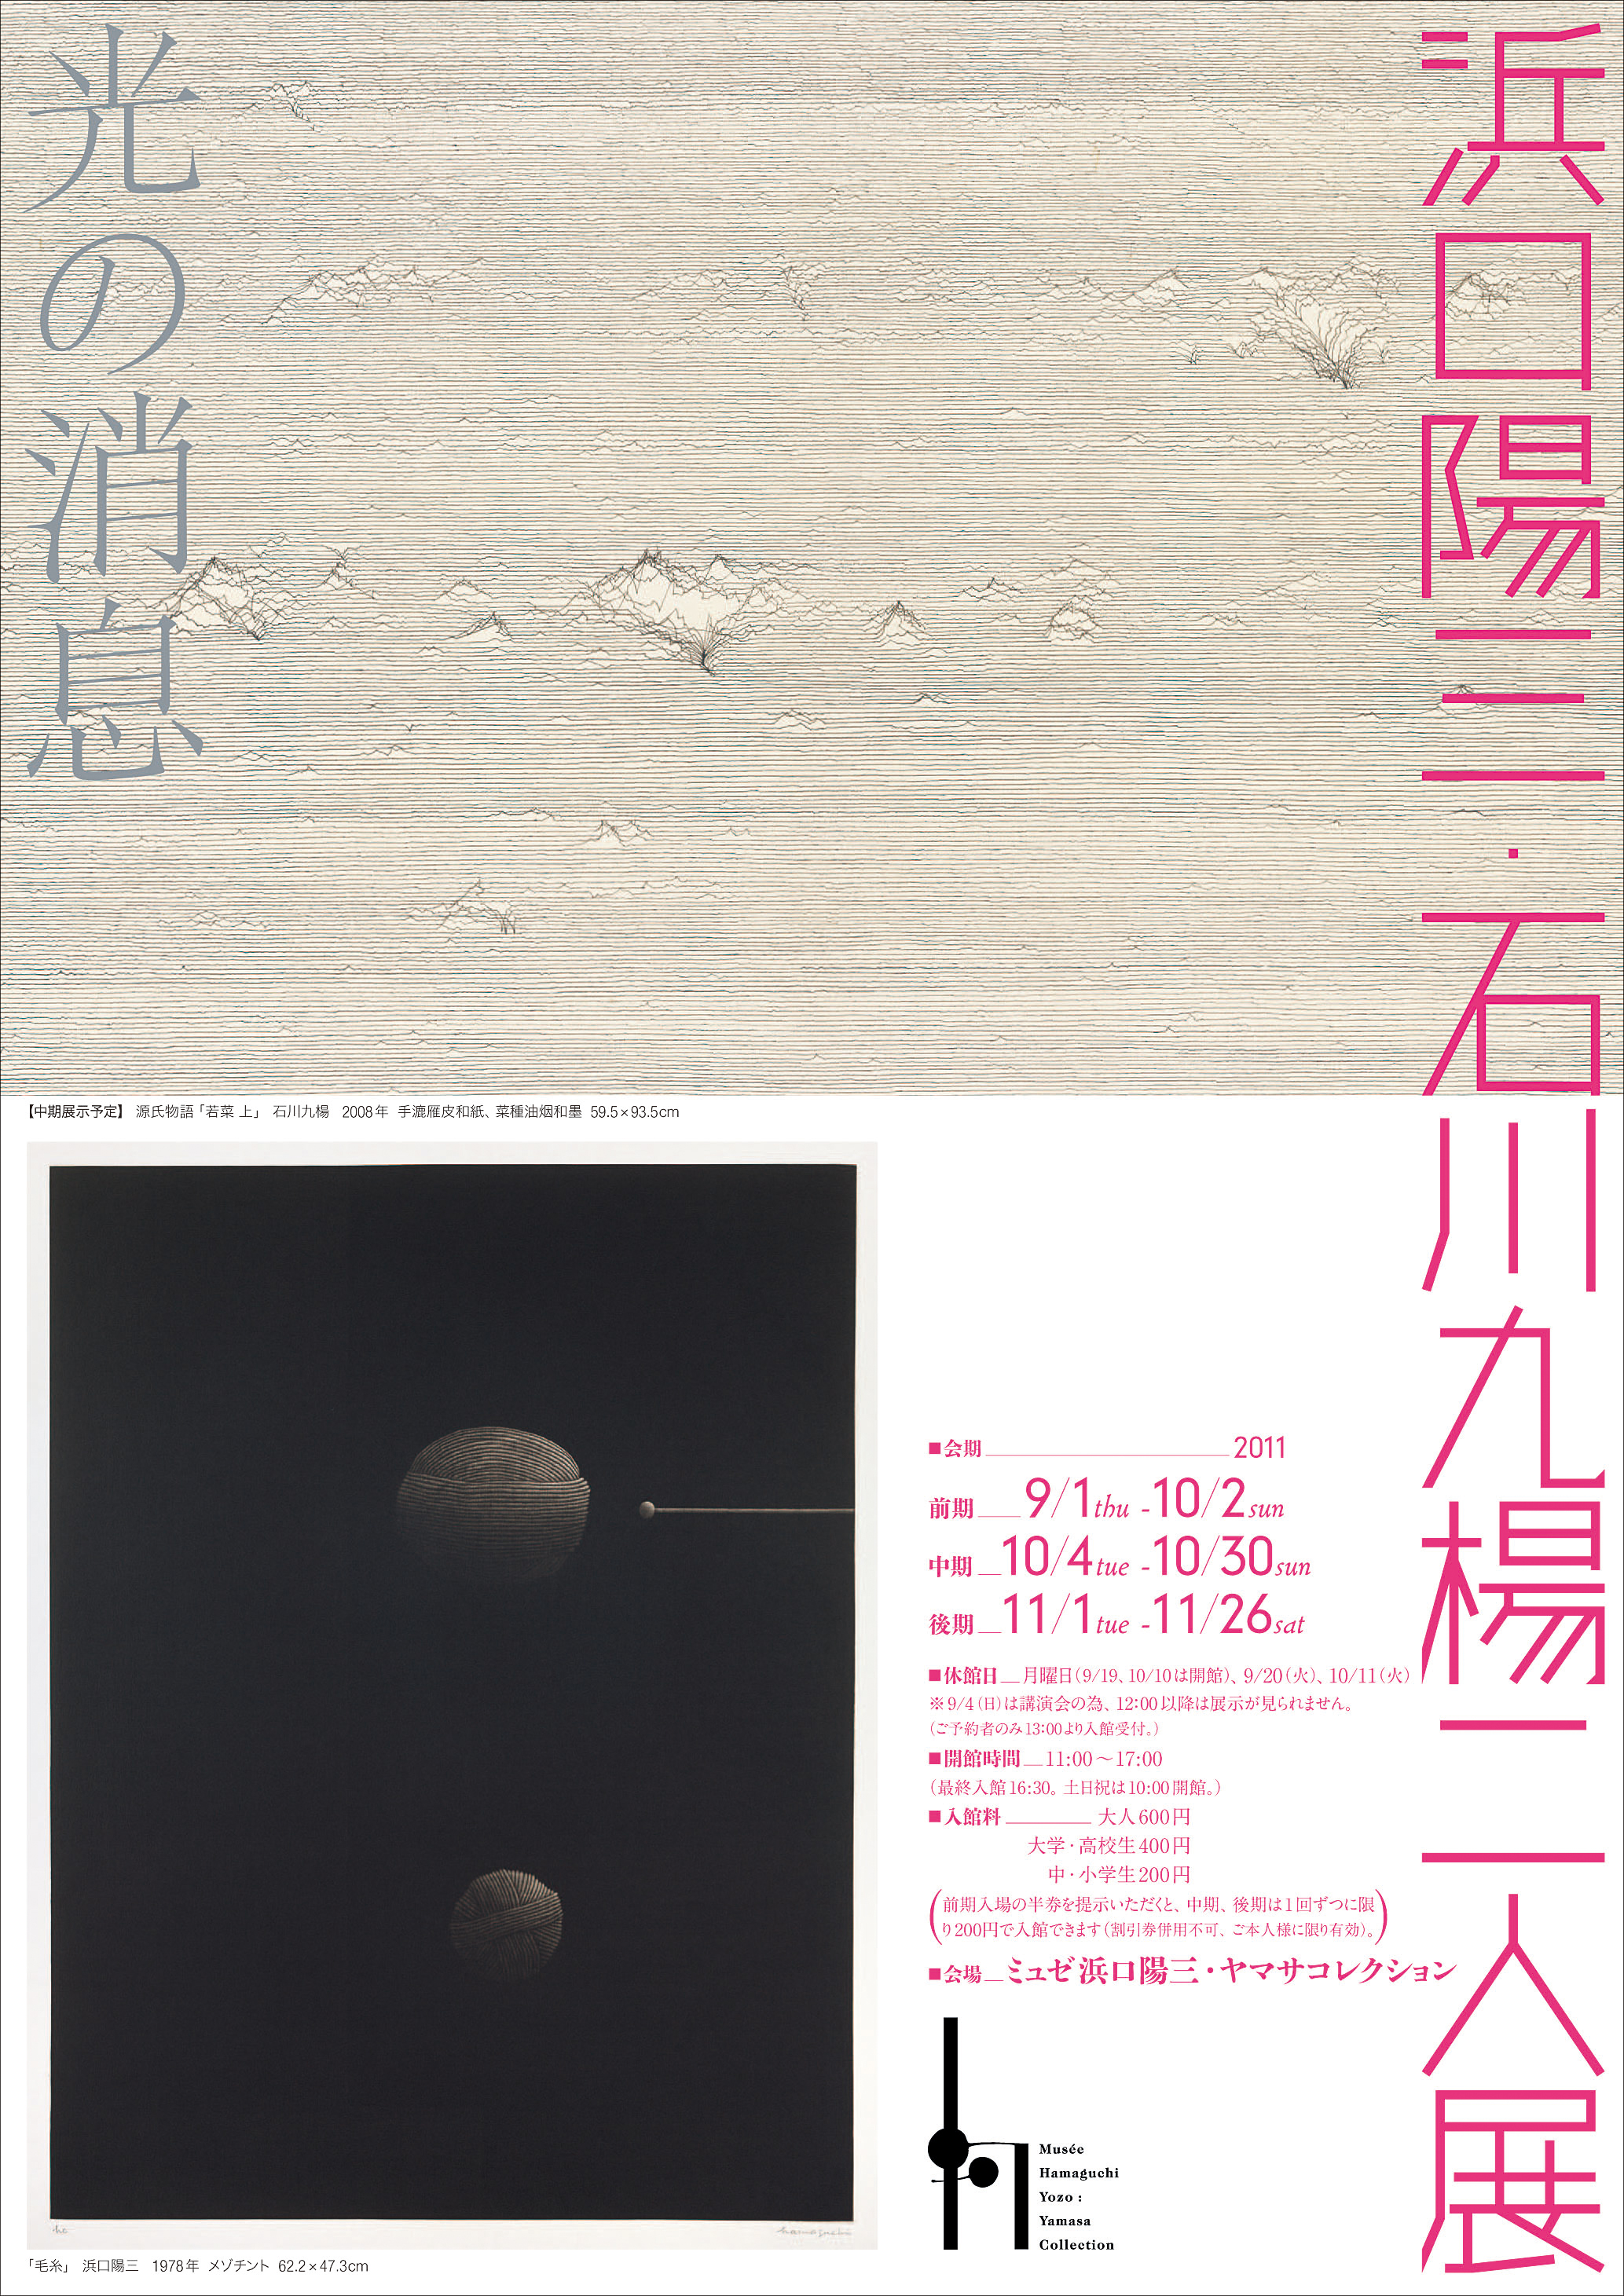 浜口陽三・石川九楊二人展 -光の消息- 【Musée Hamaguchi Yozo : Yamasa Collection】